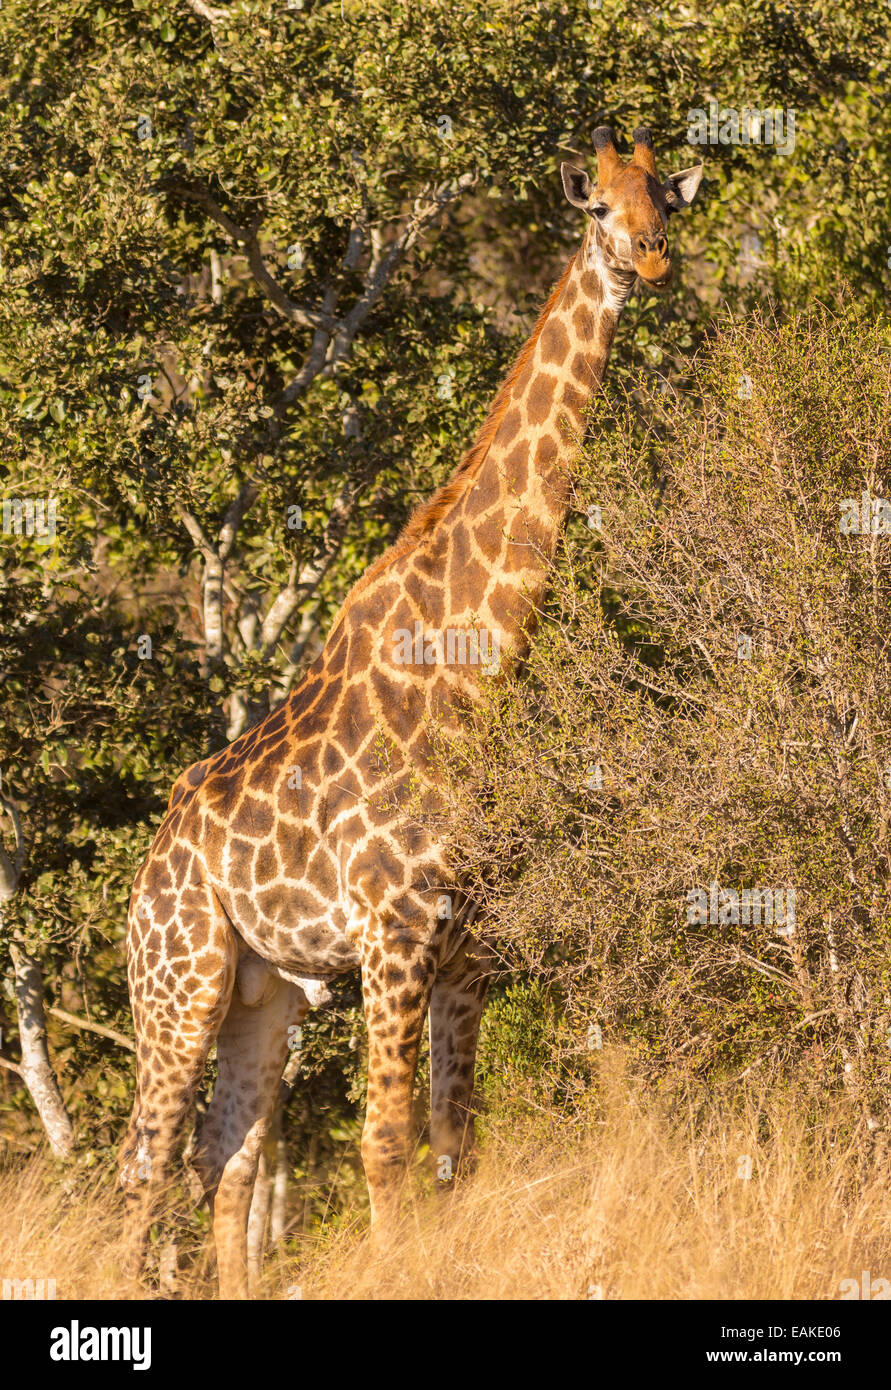 El Parque Nacional Kruger, Sudáfrica - jirafa en Bush. Foto de stock